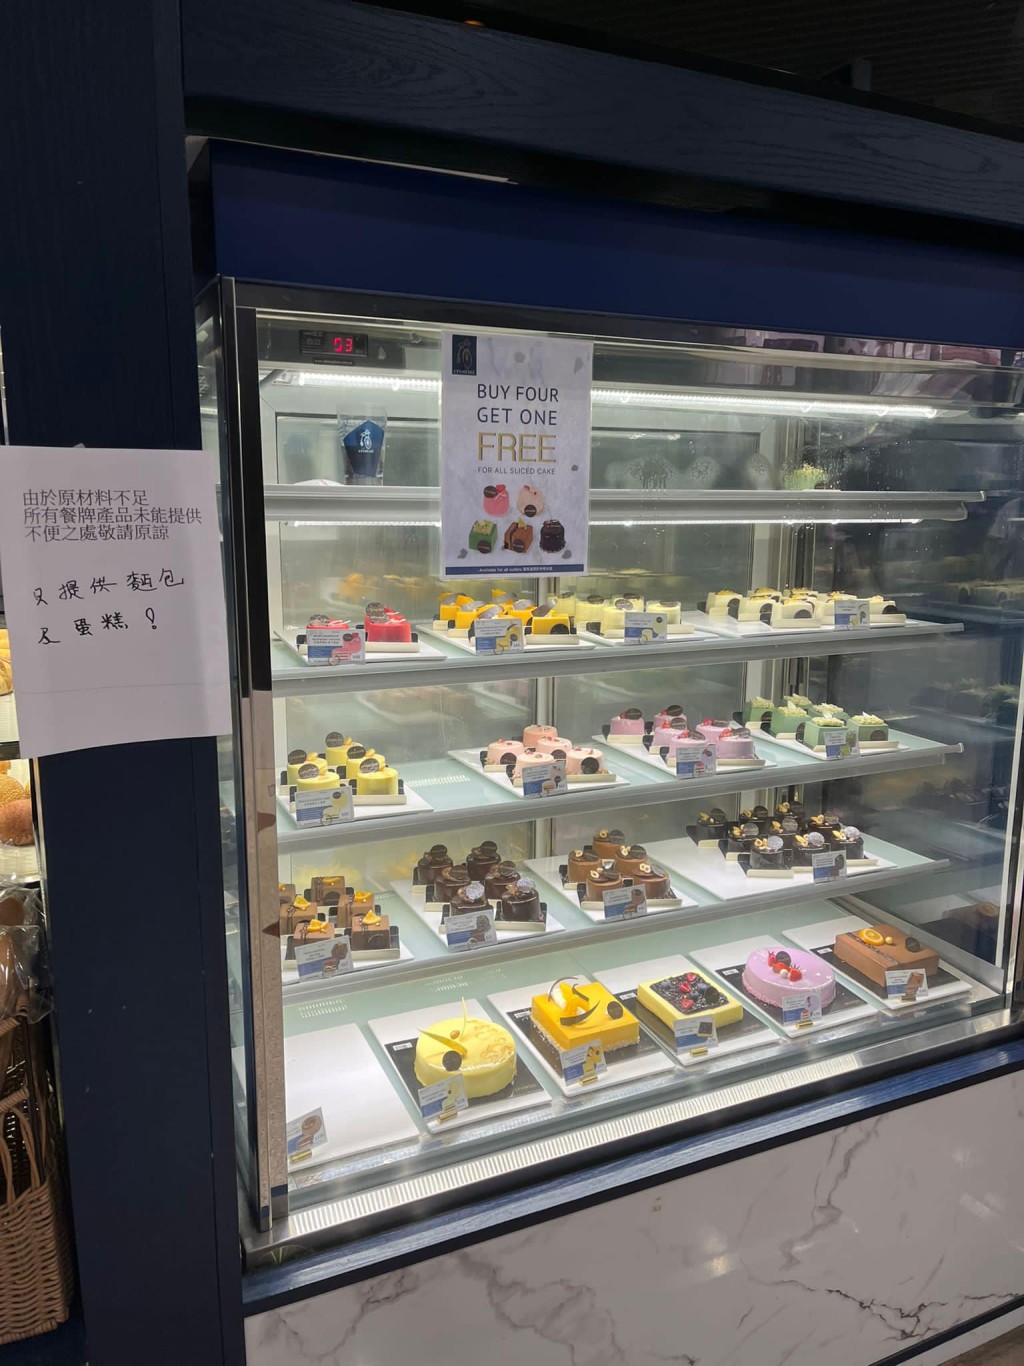 有顾客指，一周前被店员推销，以500元购买一共24张咖啡券。「香港茶餐厅及美食关注组」FB